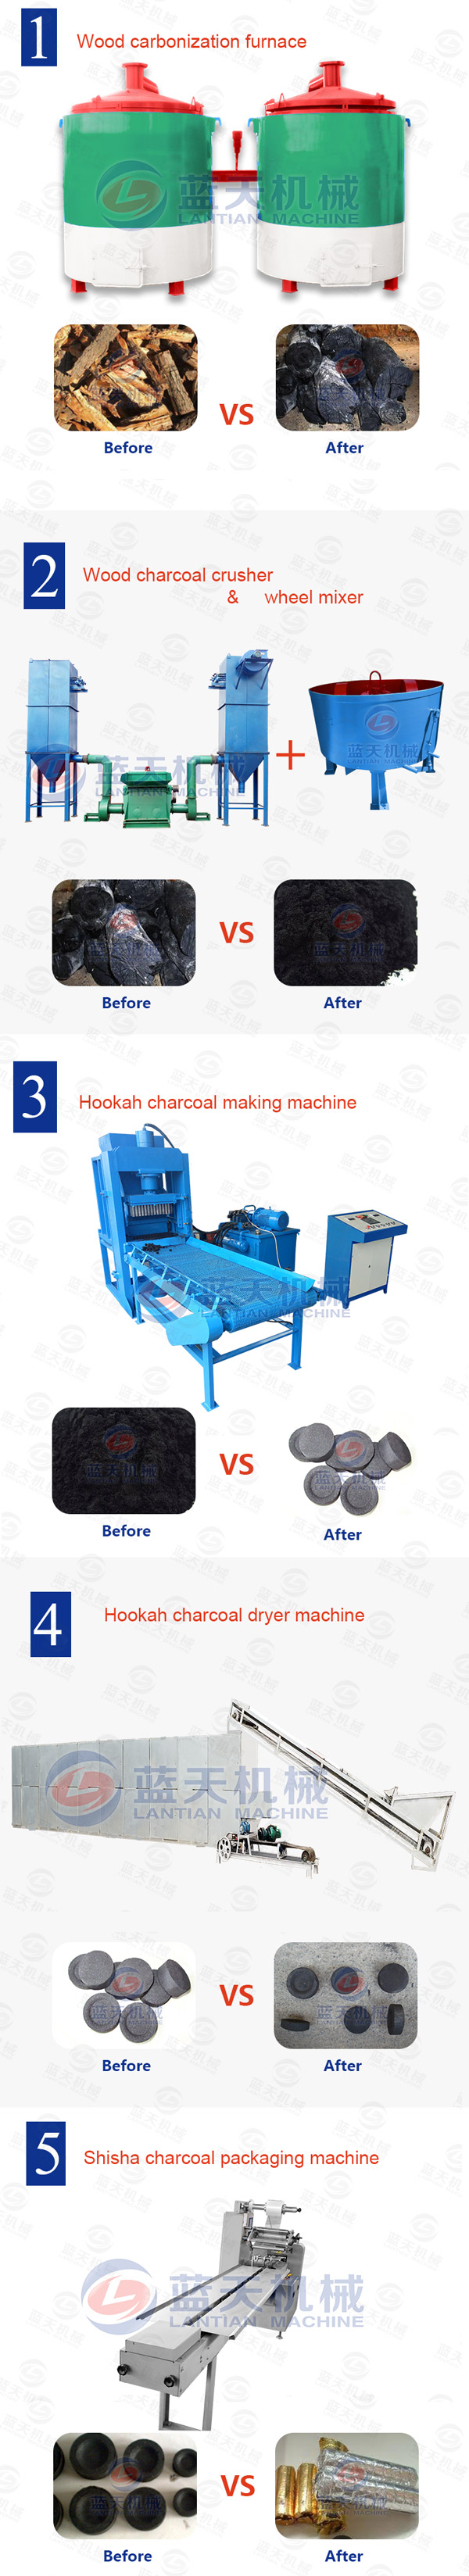 hookah charcoal making equipment